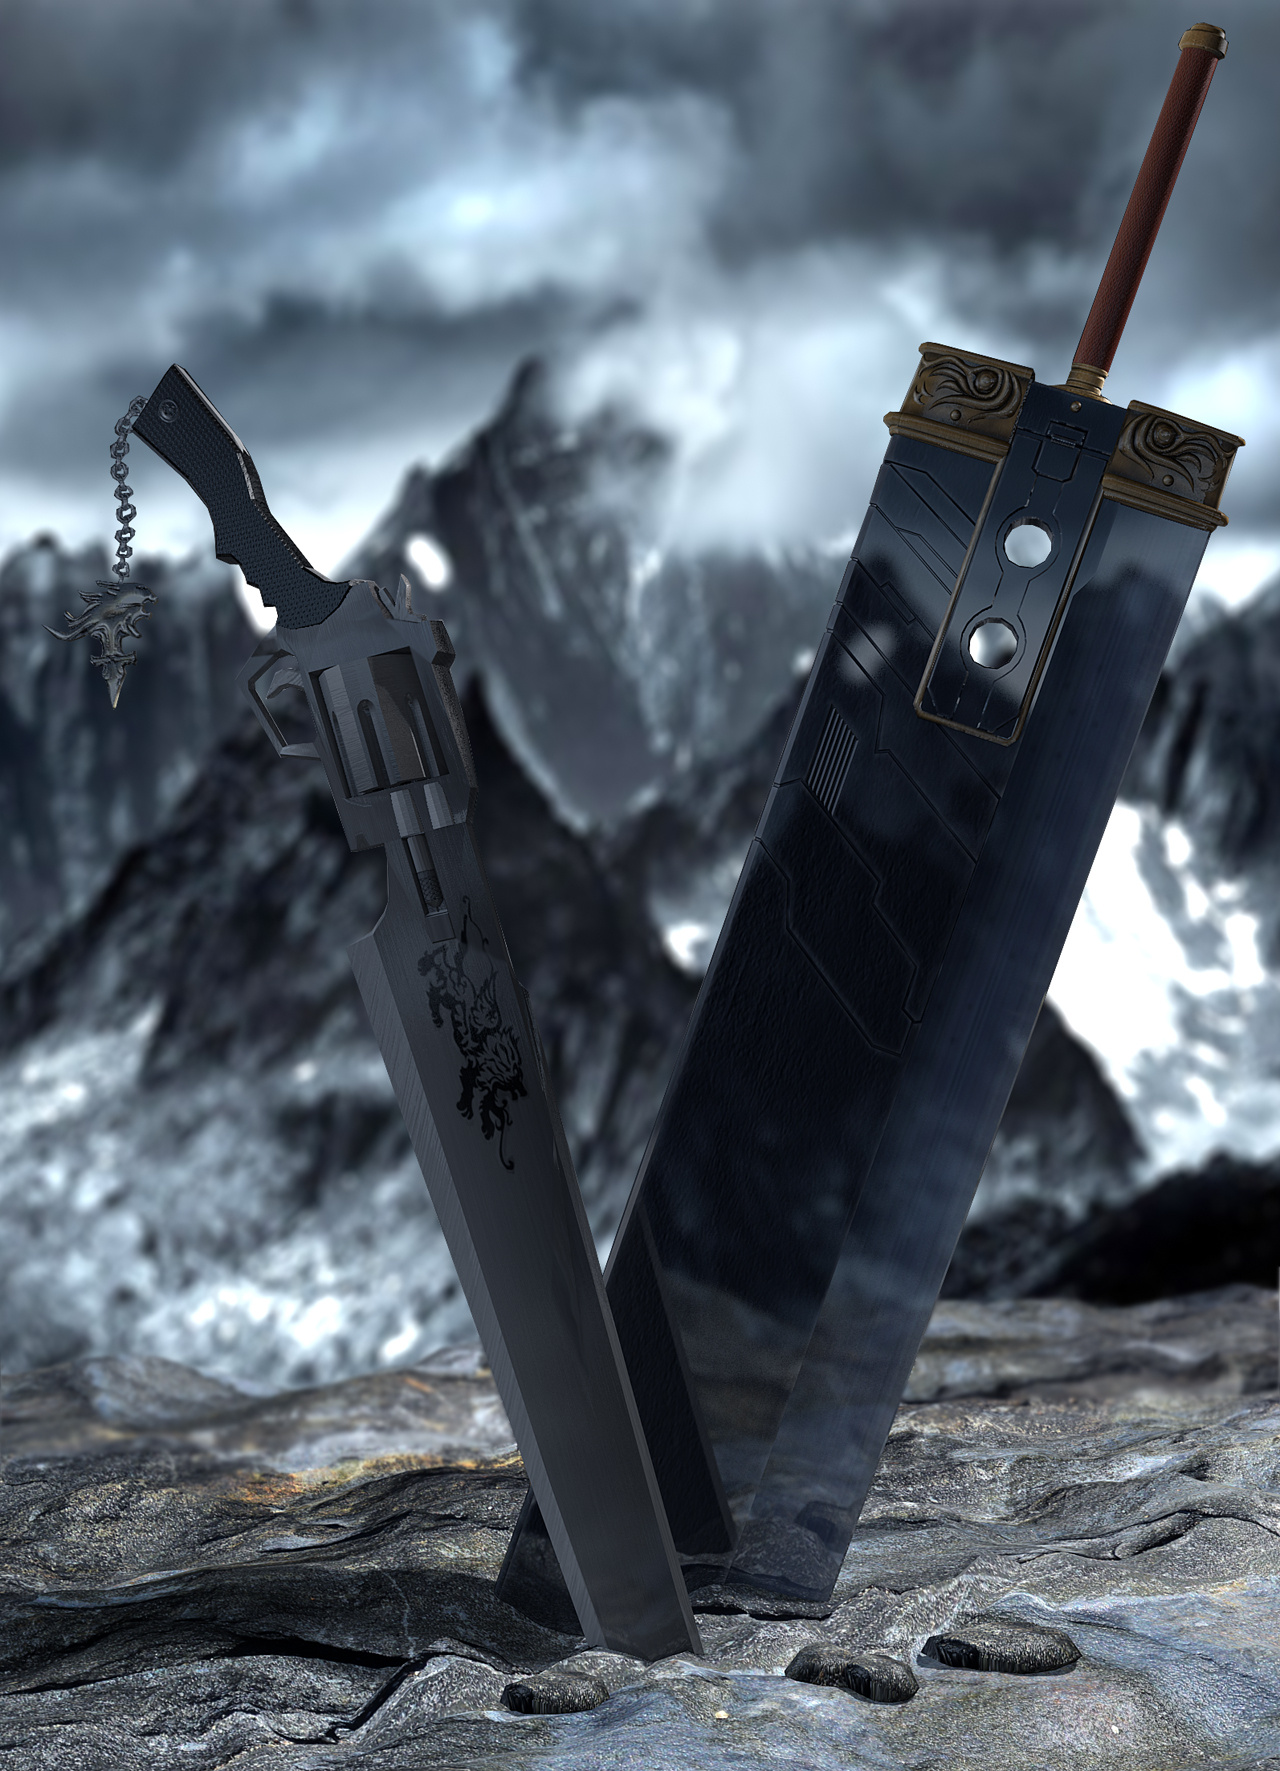 sword art online skyrim mods